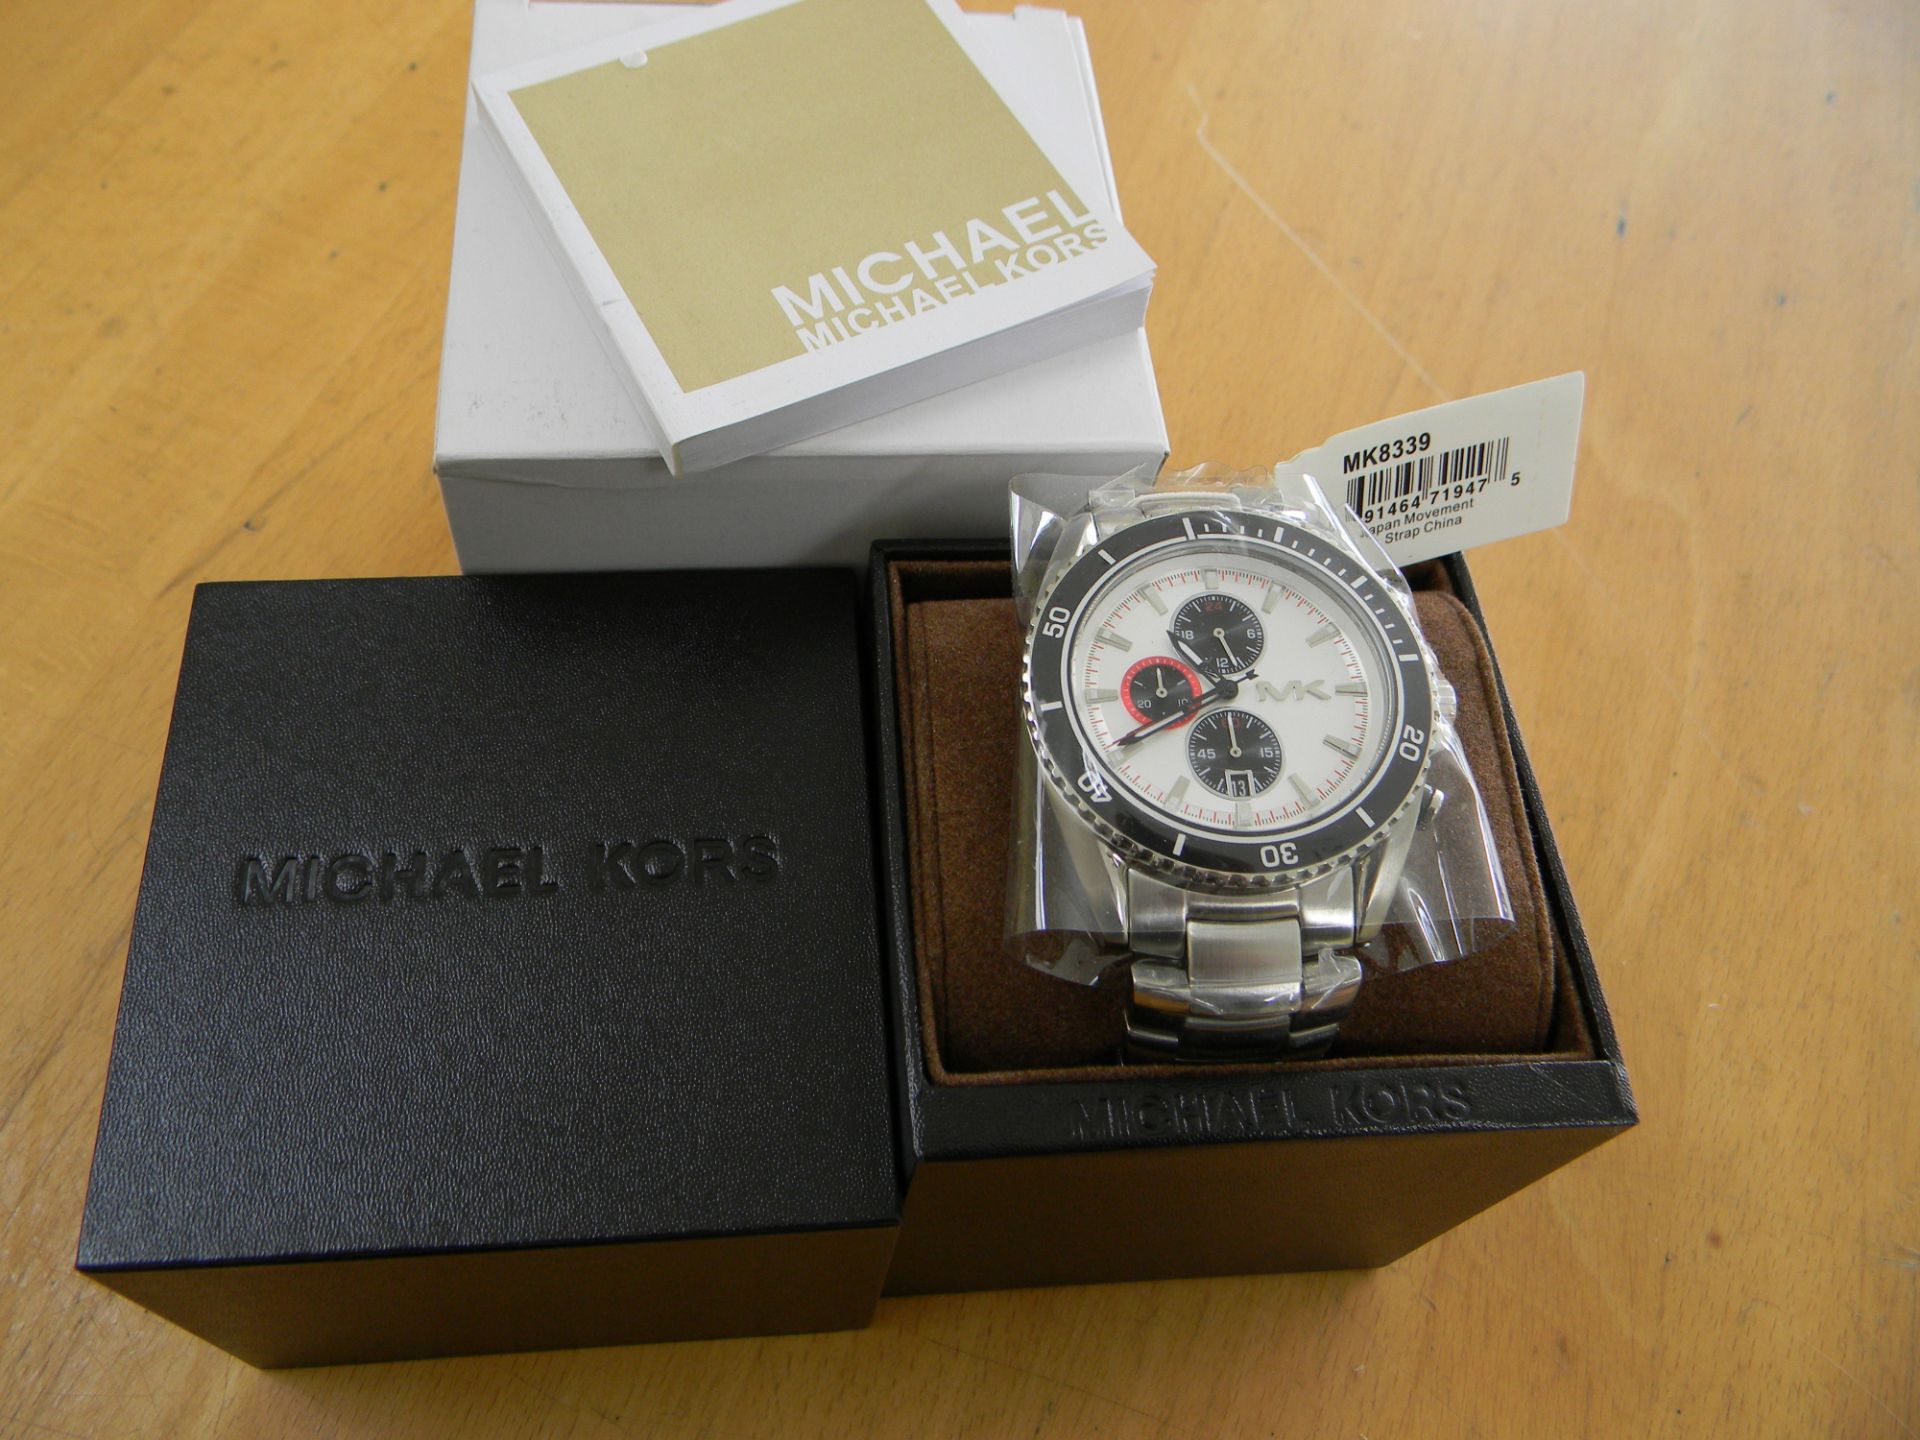 Michael Kors MK8339 Men's Watch - Image 2 of 3